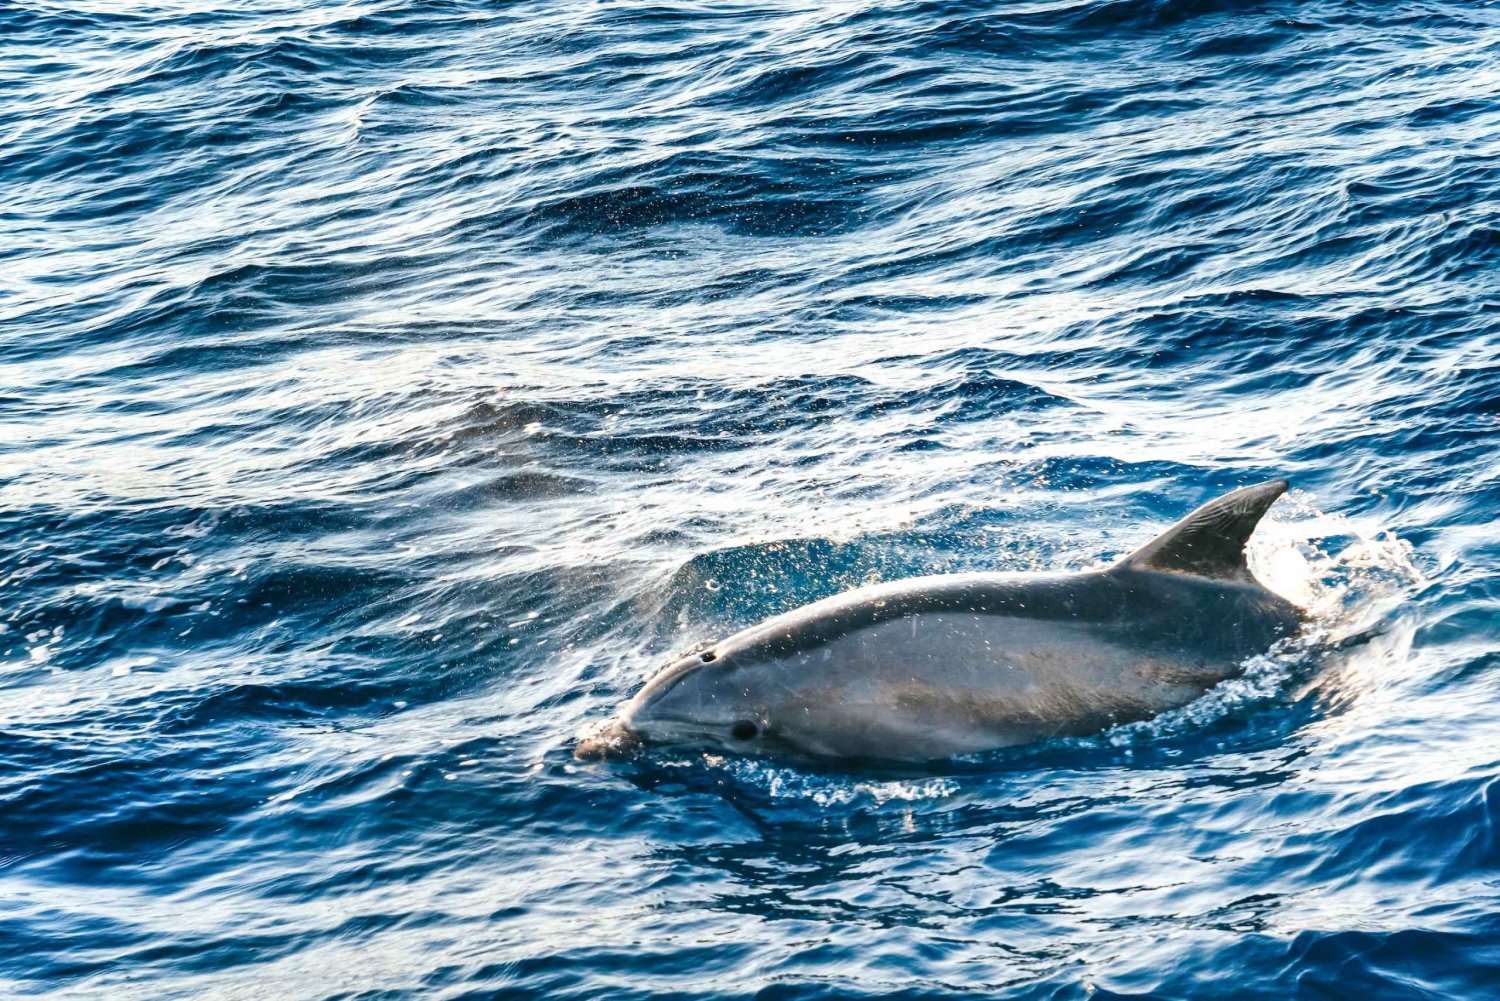 Port d'Alcudia: Wschód słońca na morzu i wycieczka łodzią z obserwacją delfinów